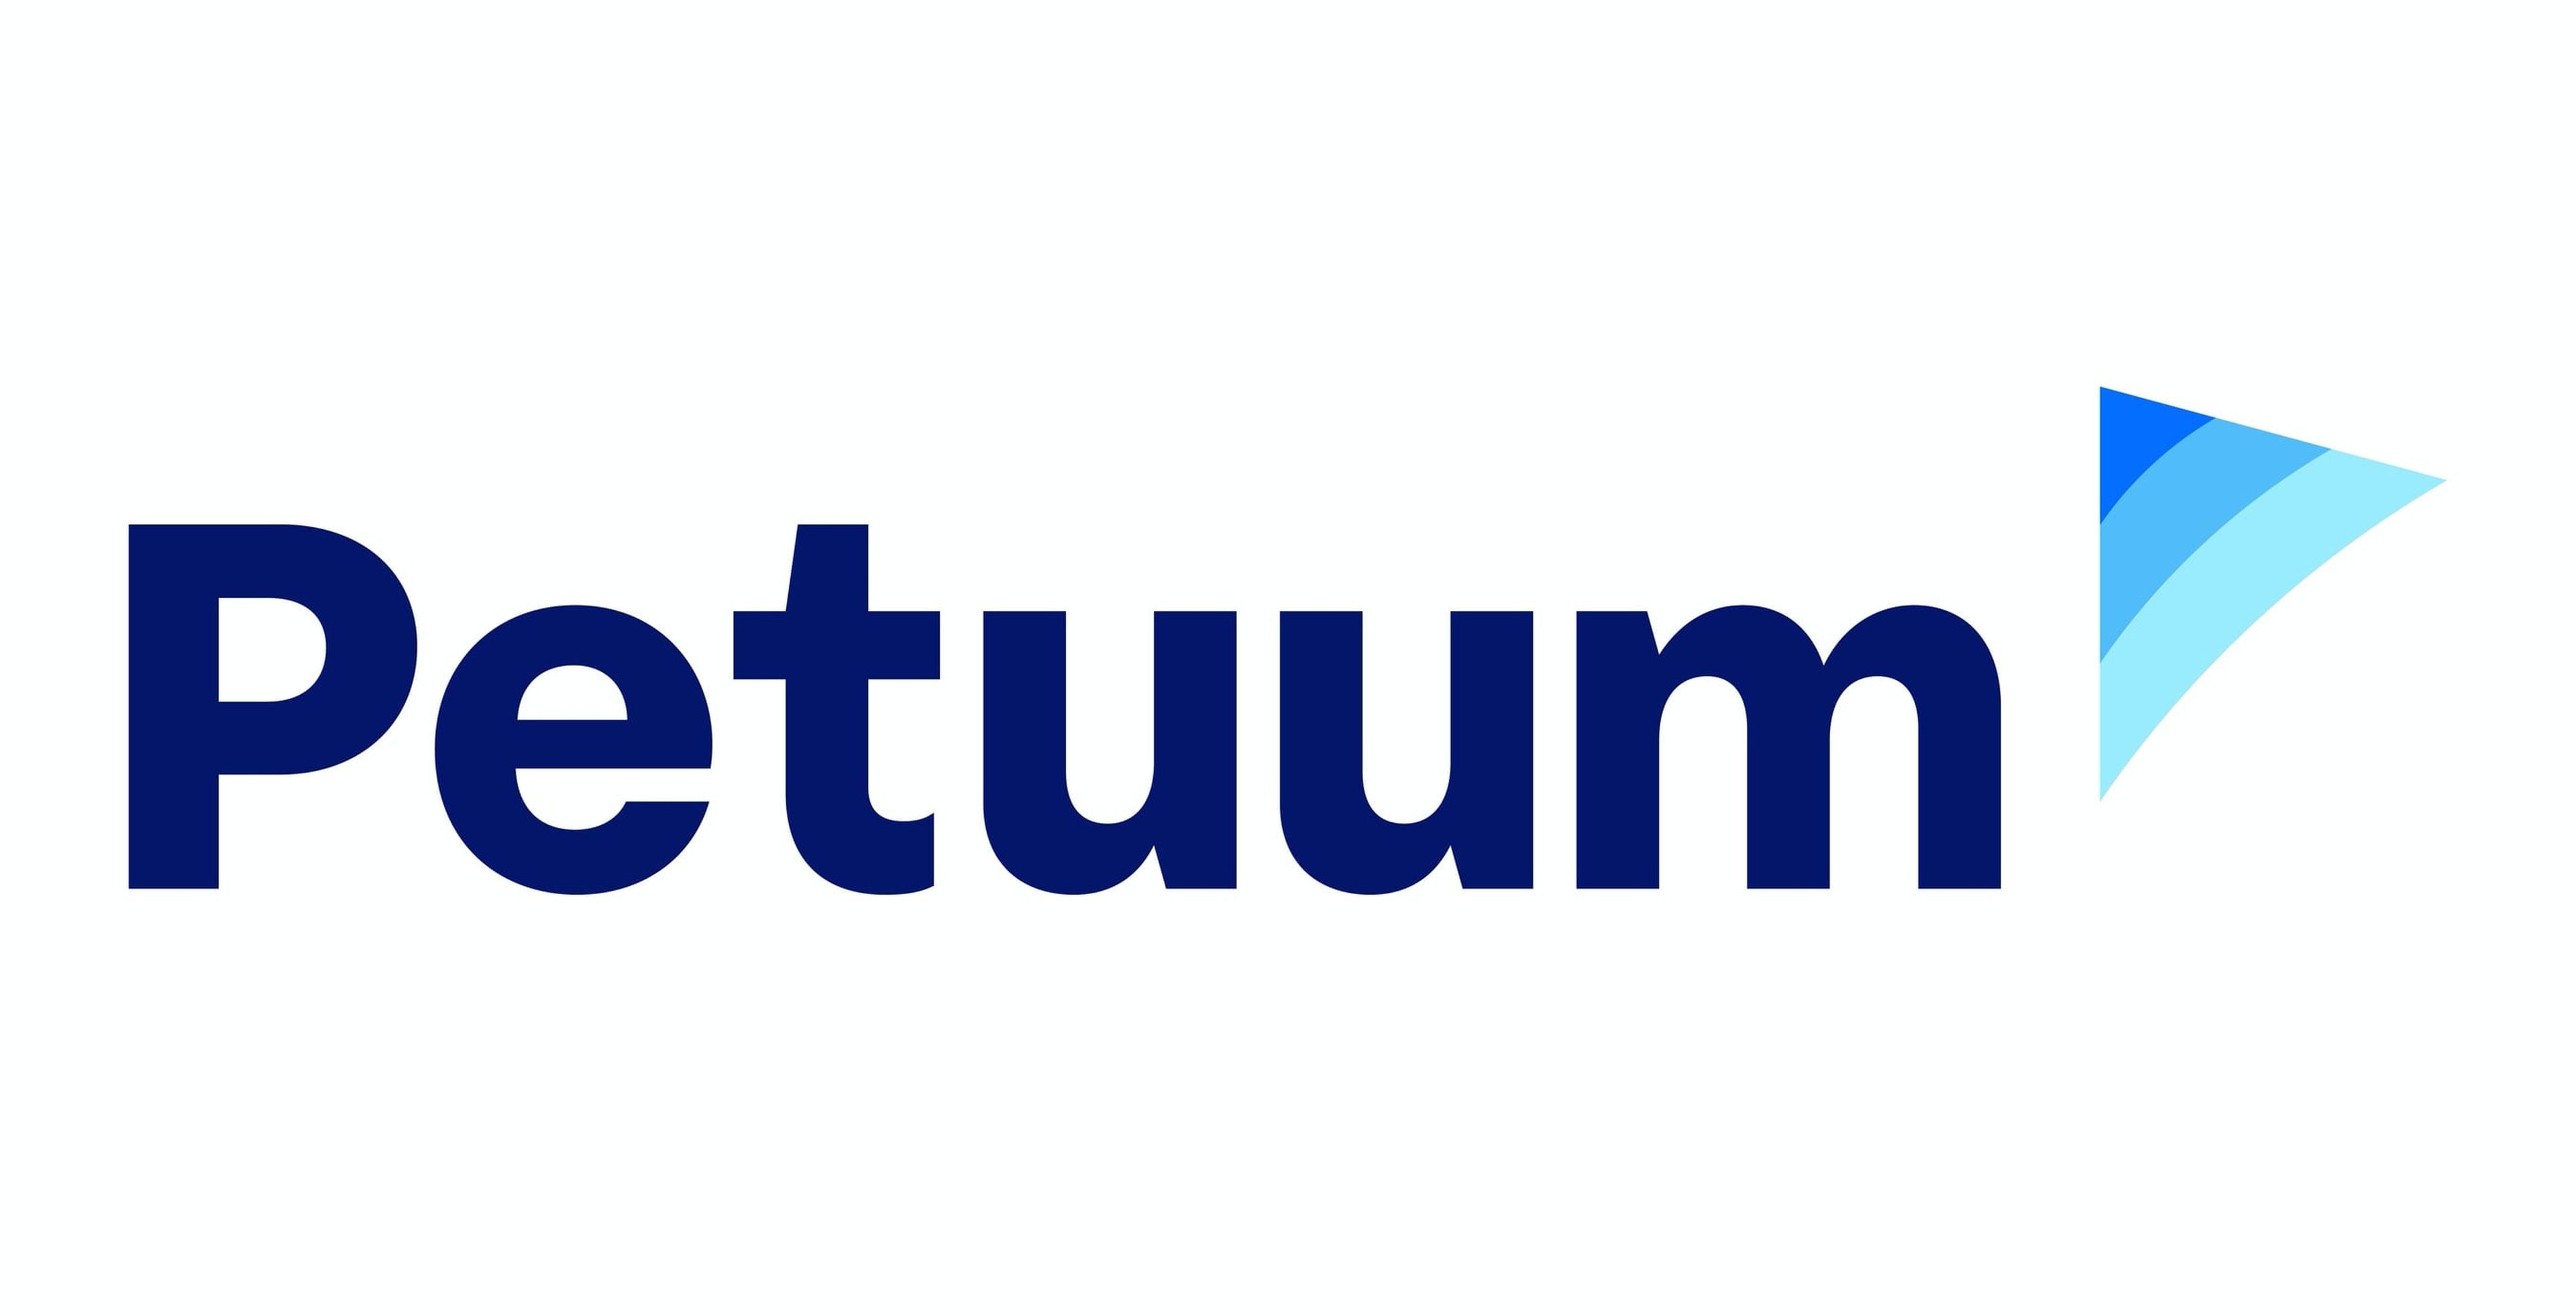 Petuum, logo.